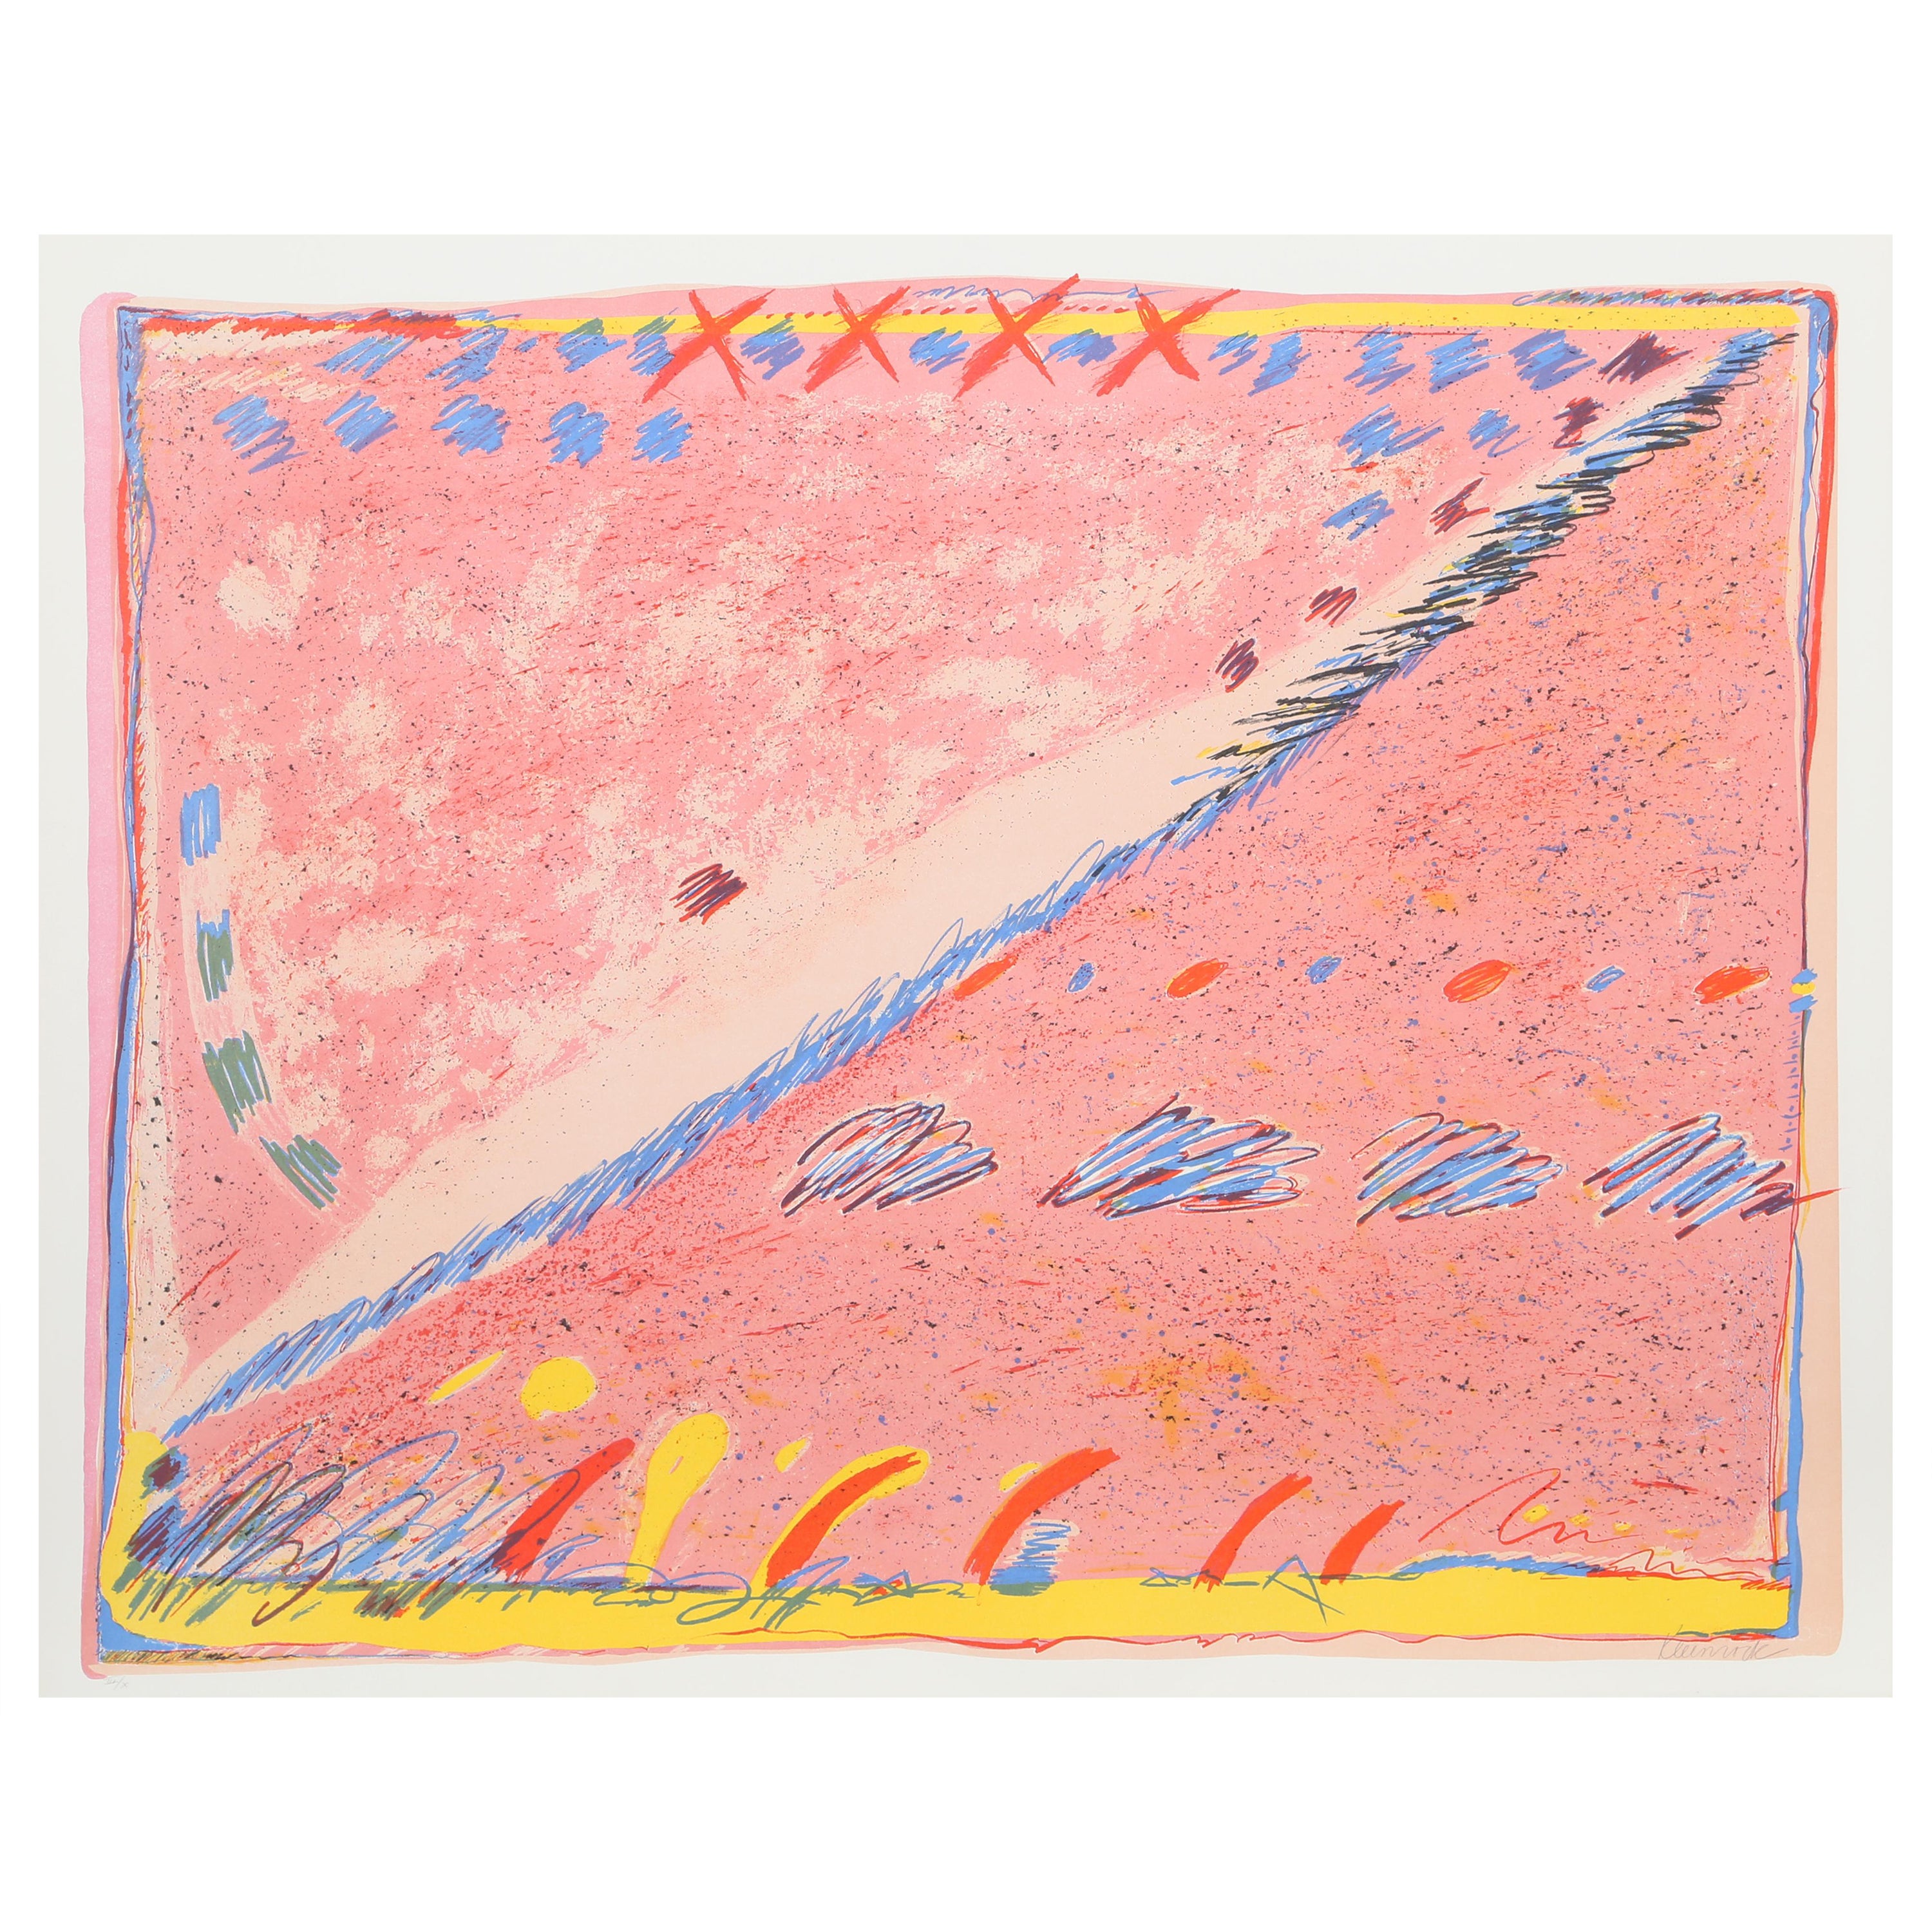 L'œuvre de Sybil Kleinrock se situe à la frontière de l'expressionnisme et du surréalisme. Des pastels colorés et doux jouent ensemble pour suggérer une composition qui peut être interprétée à la fois comme la représentation d'un paysage ou comme